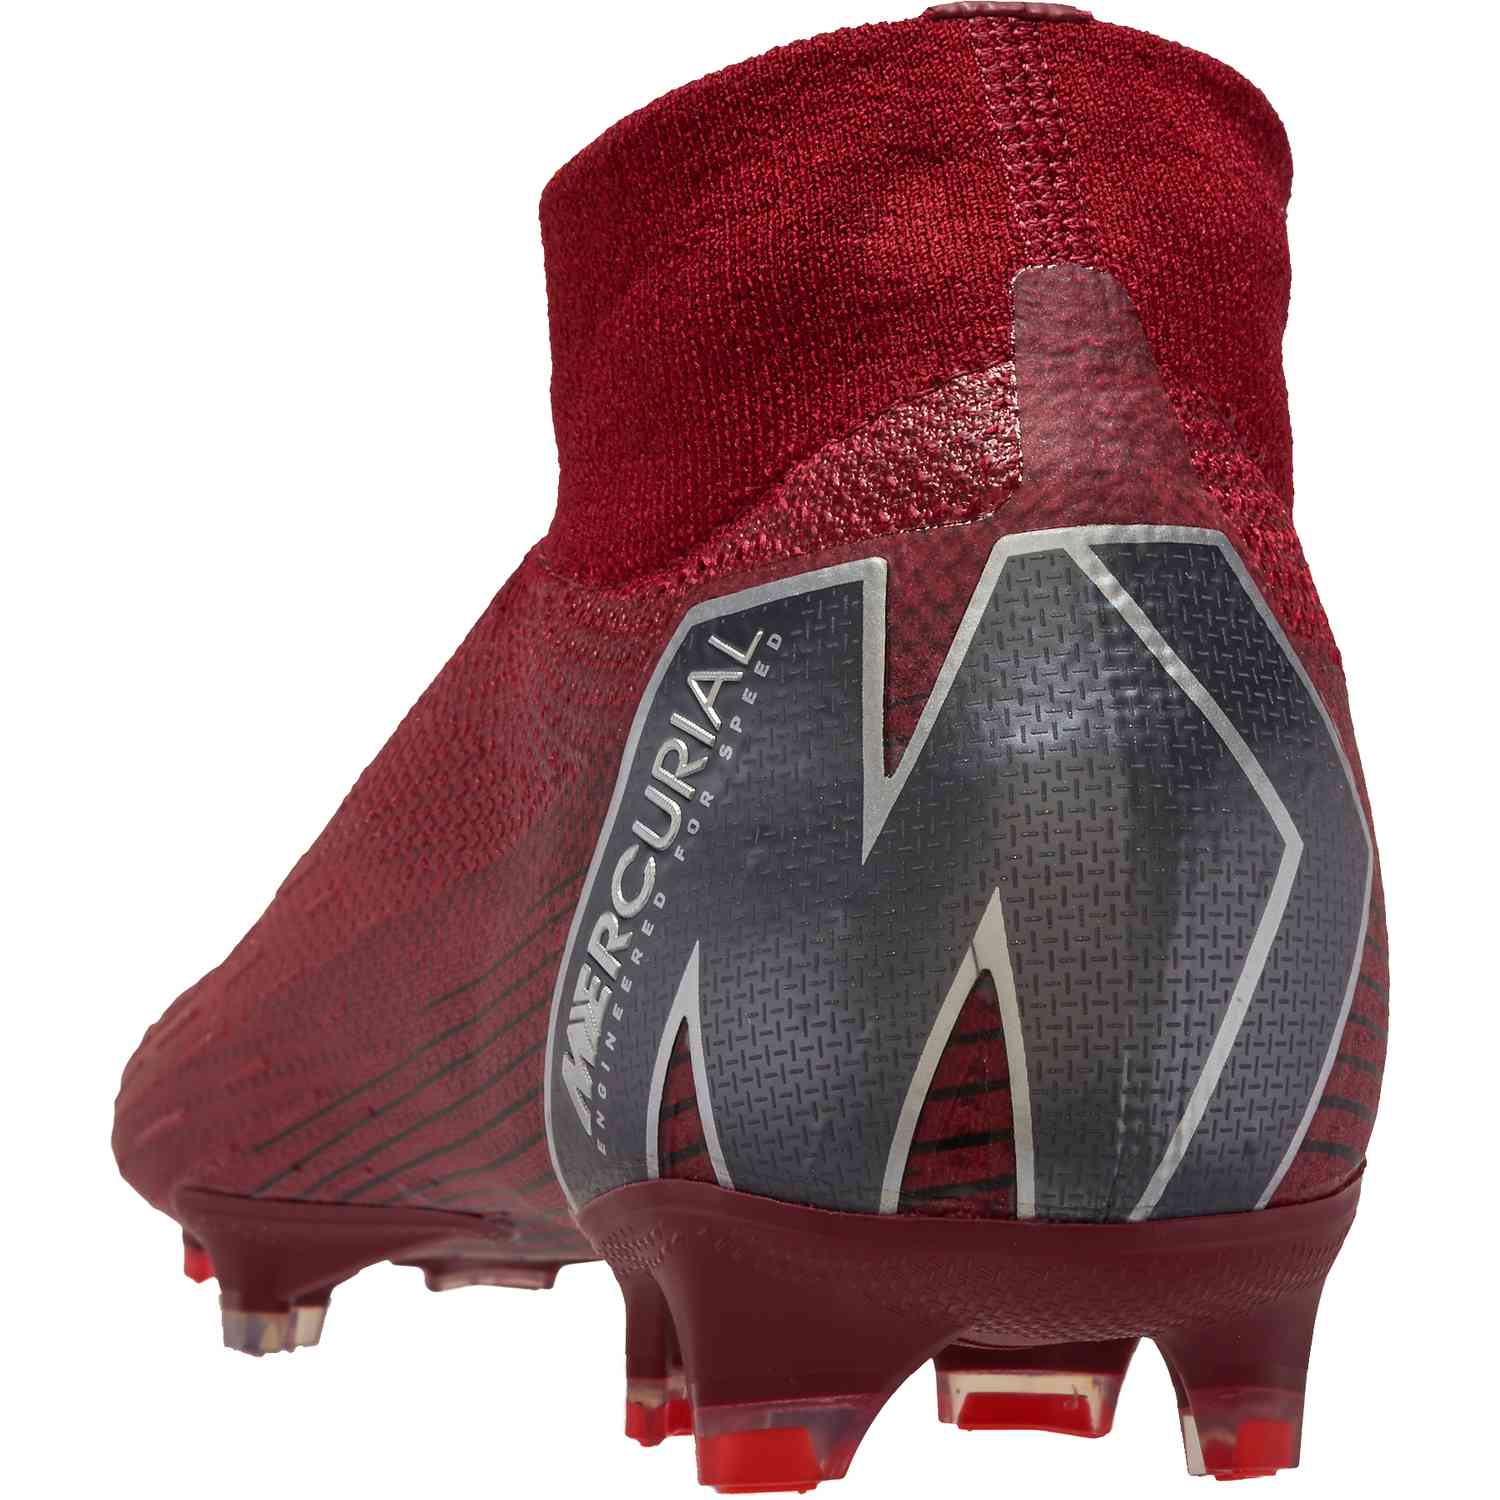 Bank Aap Ten einde raad Nike Superfly 6 Elite FG - Team Red/Metallic Dark Grey/Bright Crimson -  SoccerPro